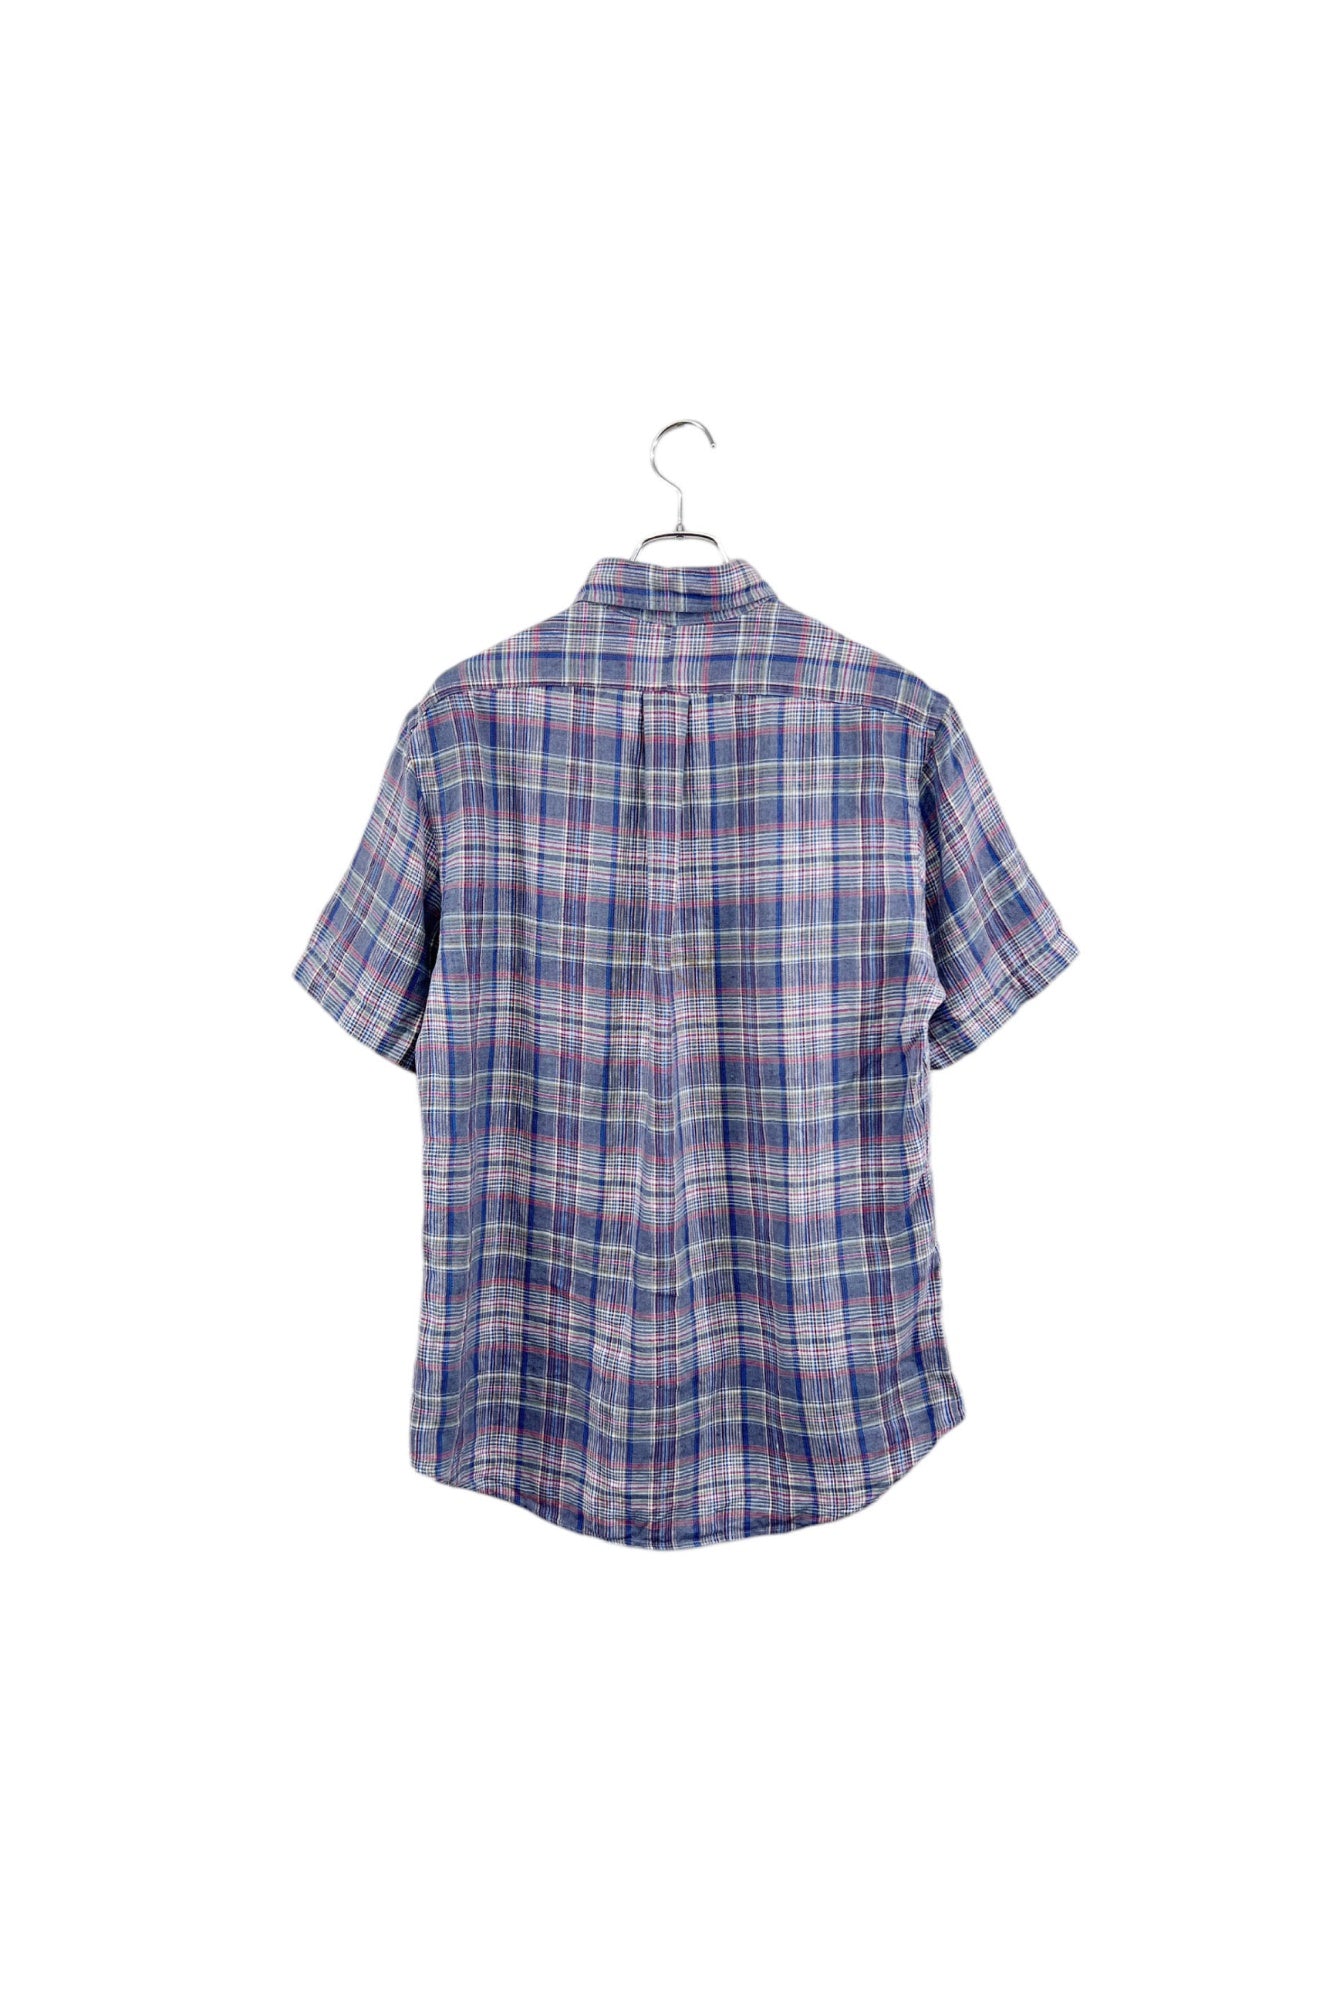 90's Ralph Lauren linen check shirt